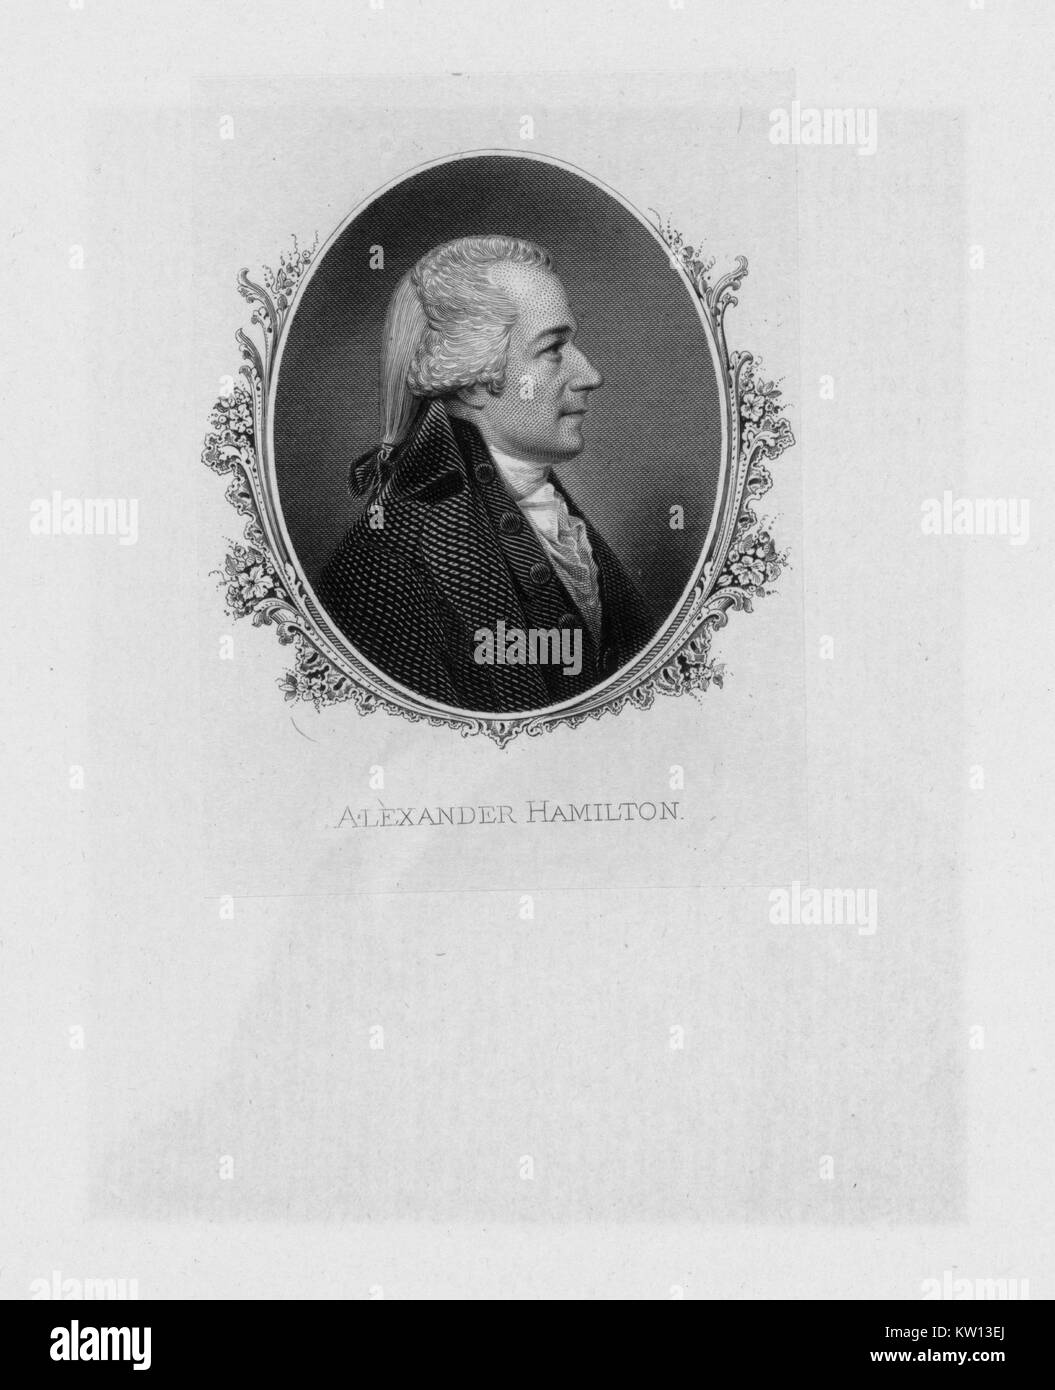 Un attacco a partire da un ritratto di Alexander Hamilton, egli fu uno dei padri fondatori degli Stati Uniti d'America, è servito come capo personale aiutante di George Washington durante la guerra rivoluzionaria americana ed è stato il primo negli Stati Uniti Segretario del Tesoro, 1881. Dalla Biblioteca Pubblica di New York. Foto Stock